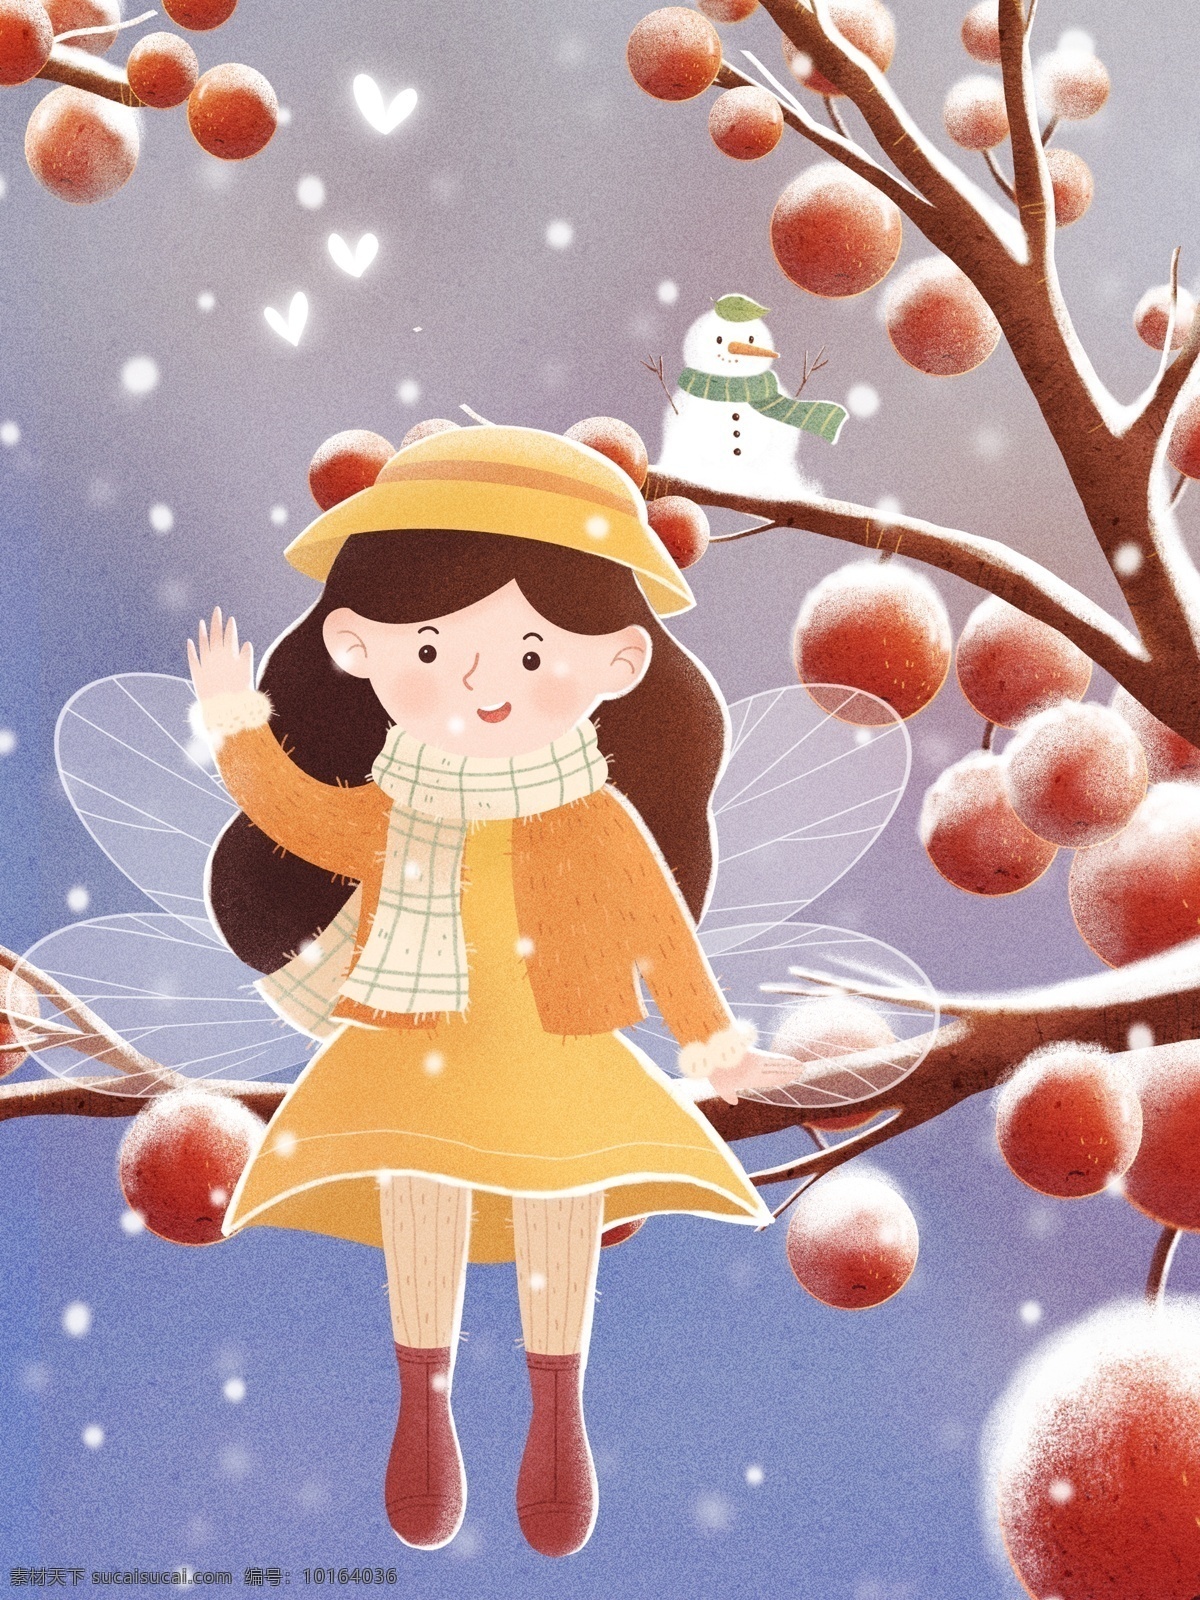 冬日 雪景 一月 你好 女孩 雪人 插画 冬天 壁纸 桌面 红雪果 下雪 商业插画 手机用图 背景